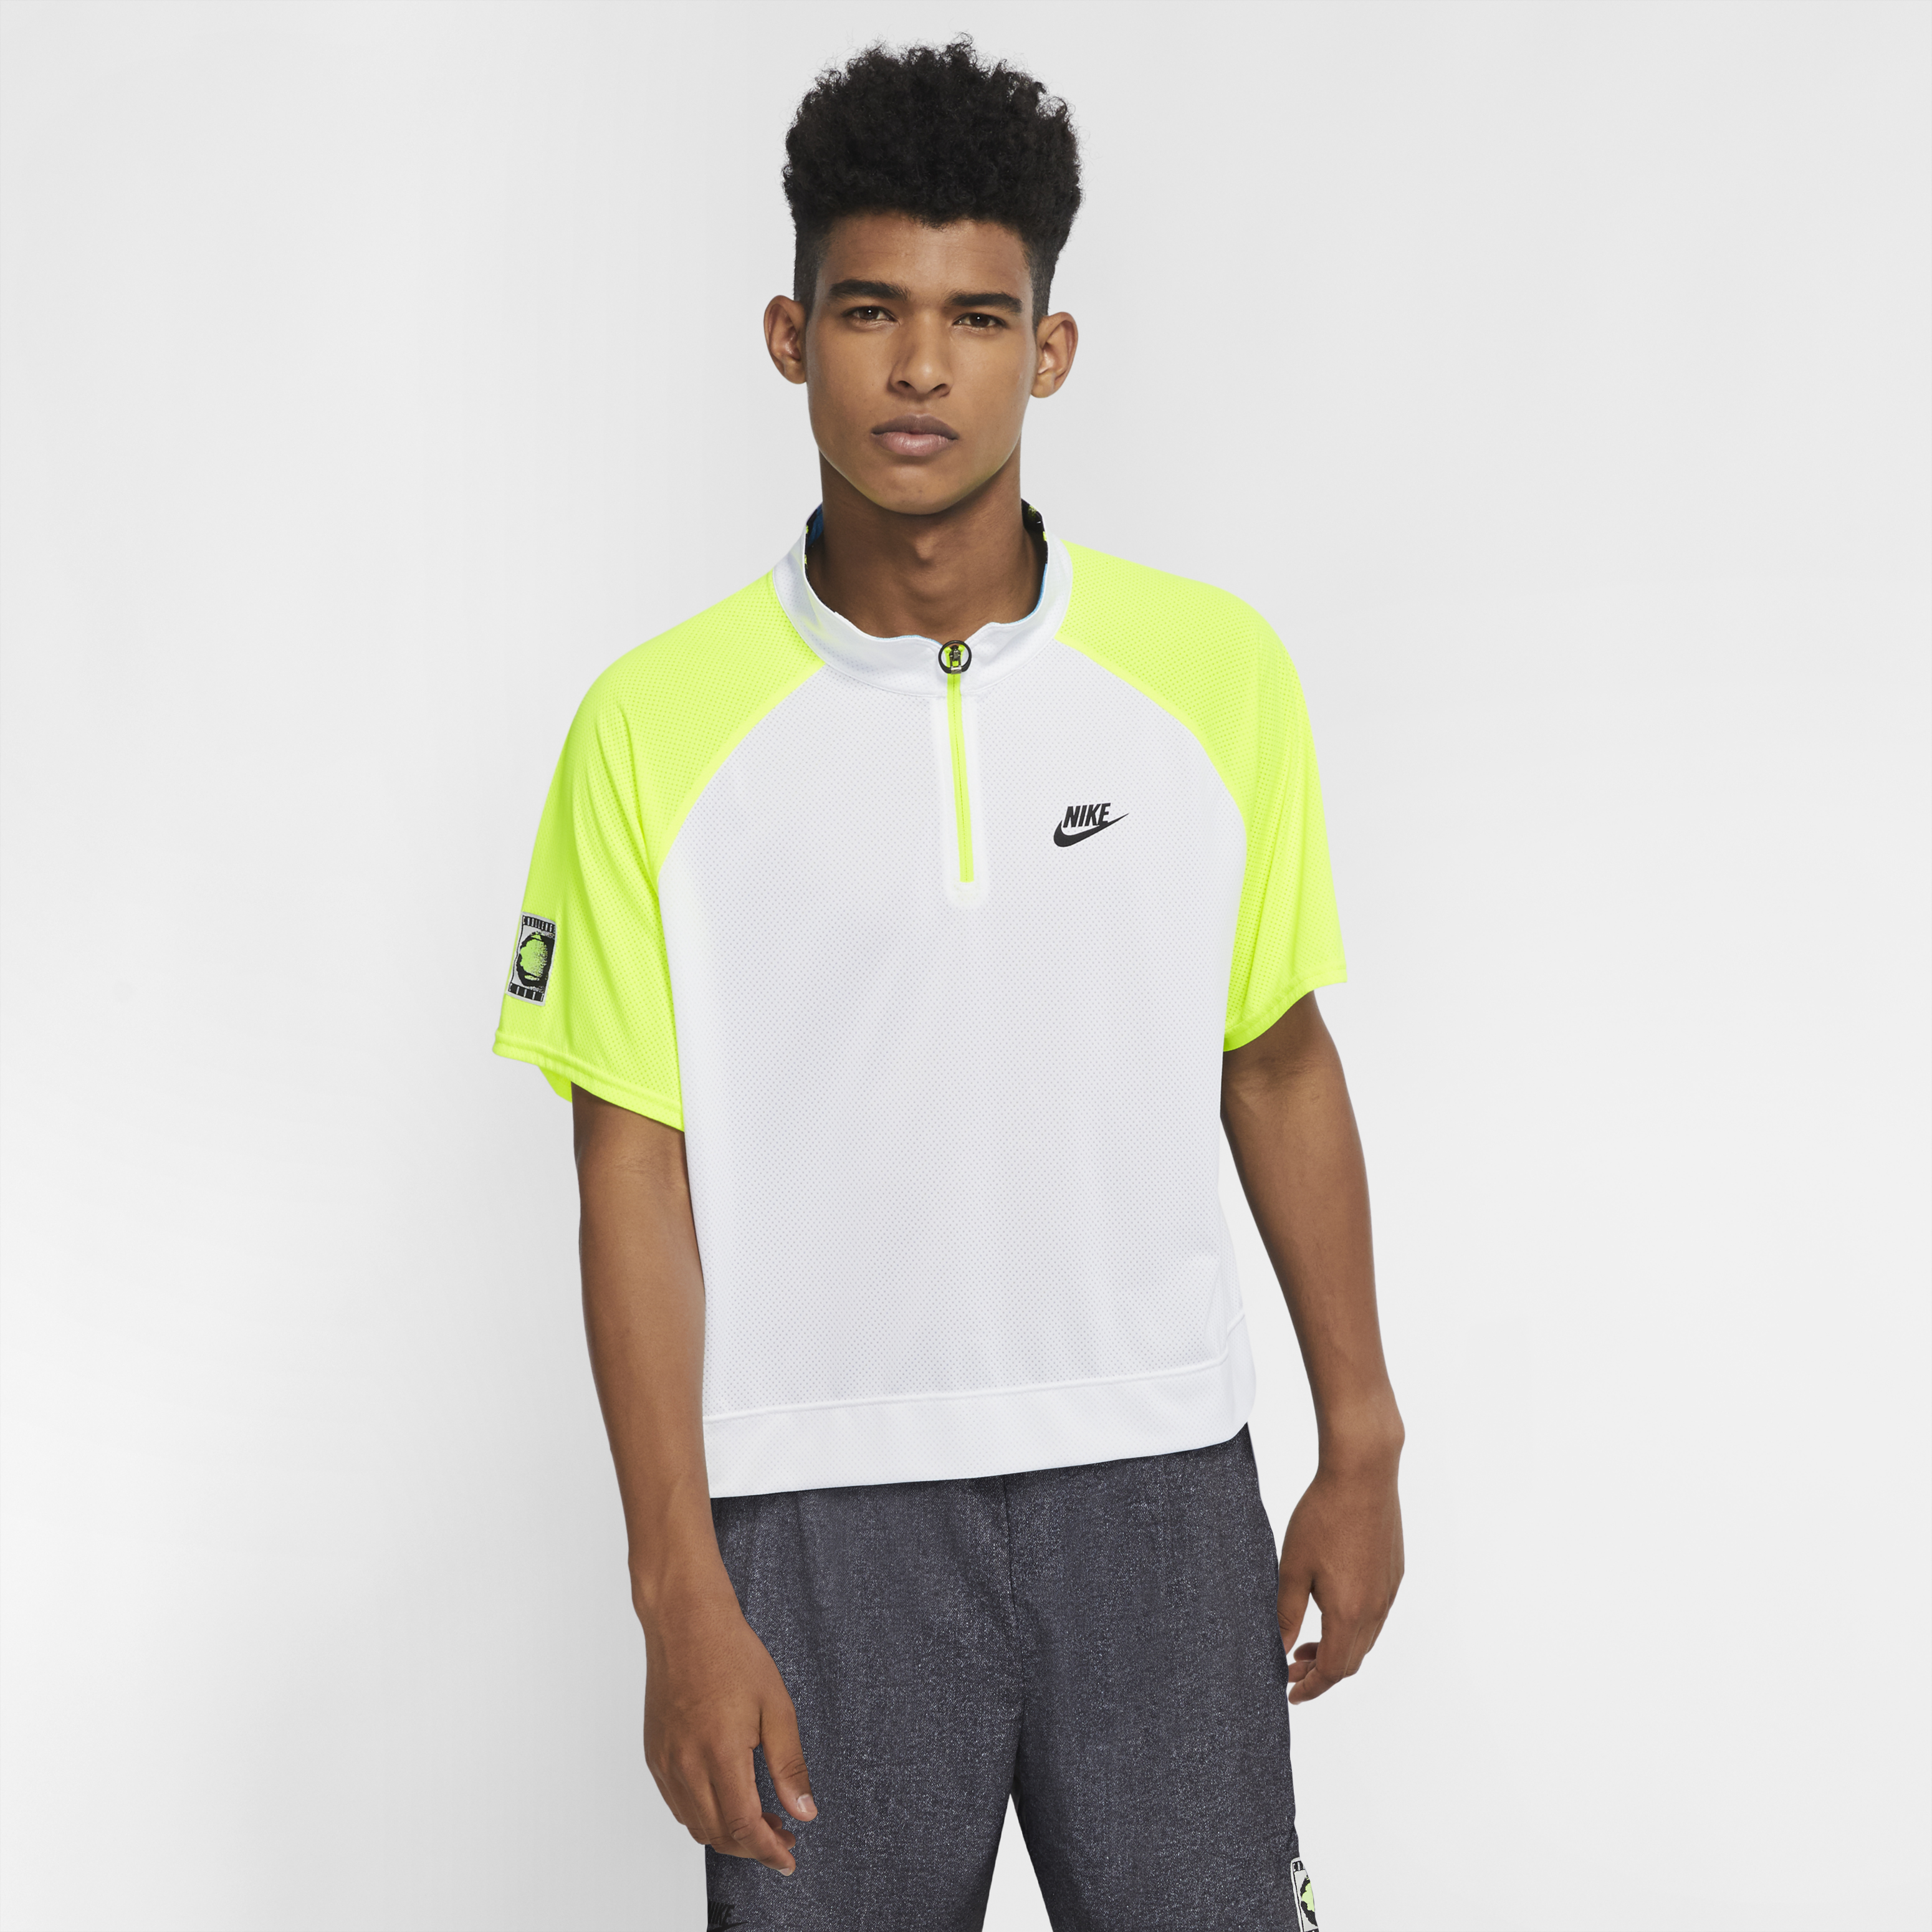 La nuova collezione Nike per la ripartenza da New York